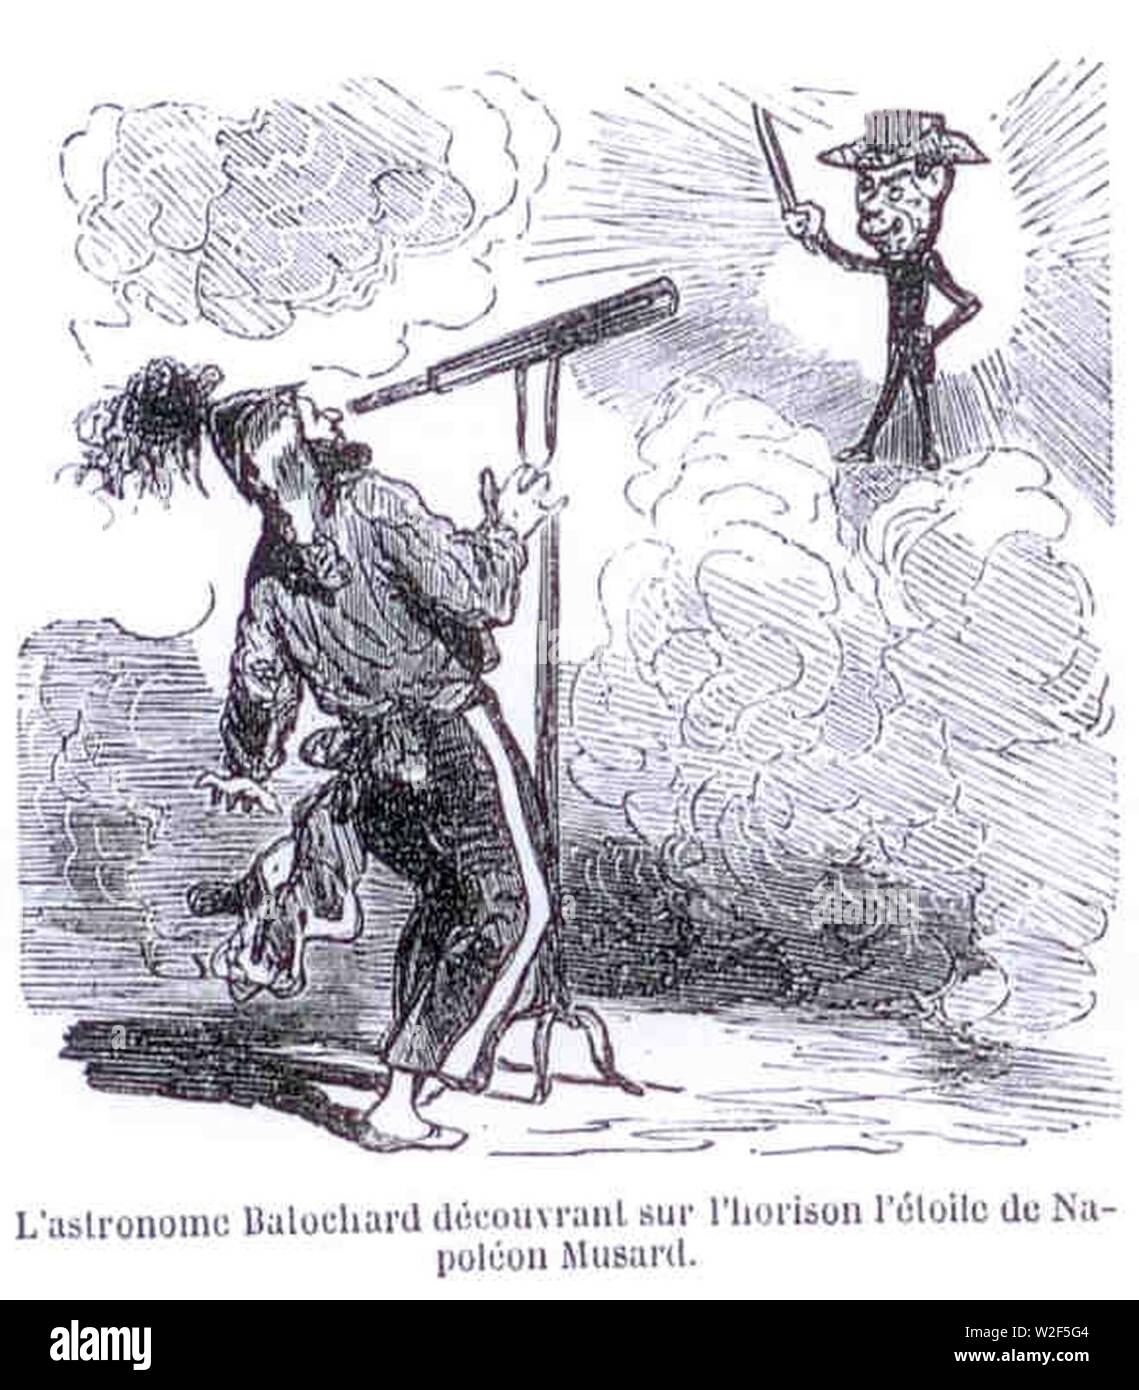 Cham L'astronome Balochard découvre l'étoile de Musard 1851. Stock Photo